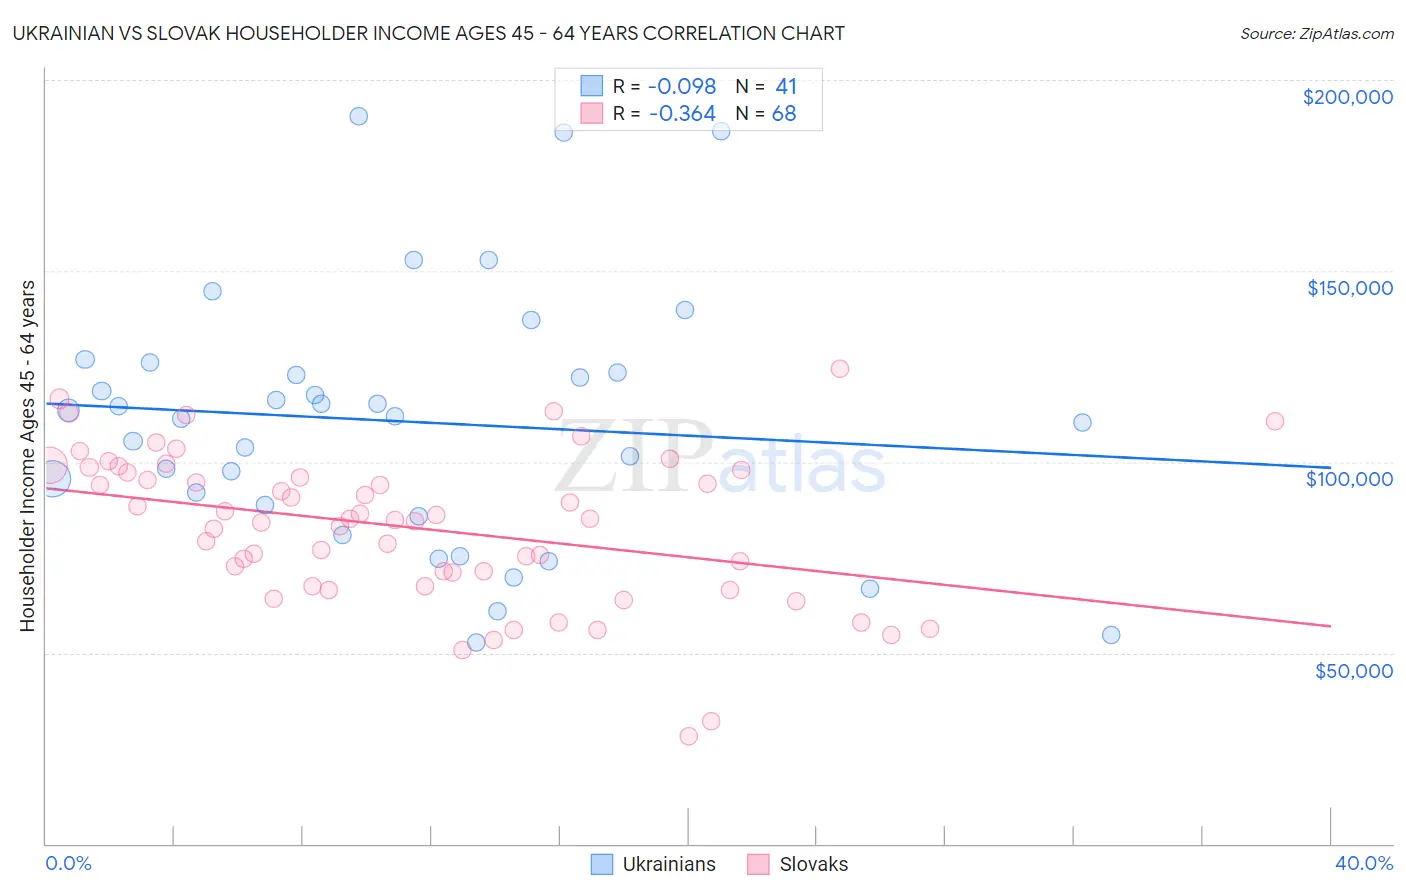 Ukrainian vs Slovak Householder Income Ages 45 - 64 years